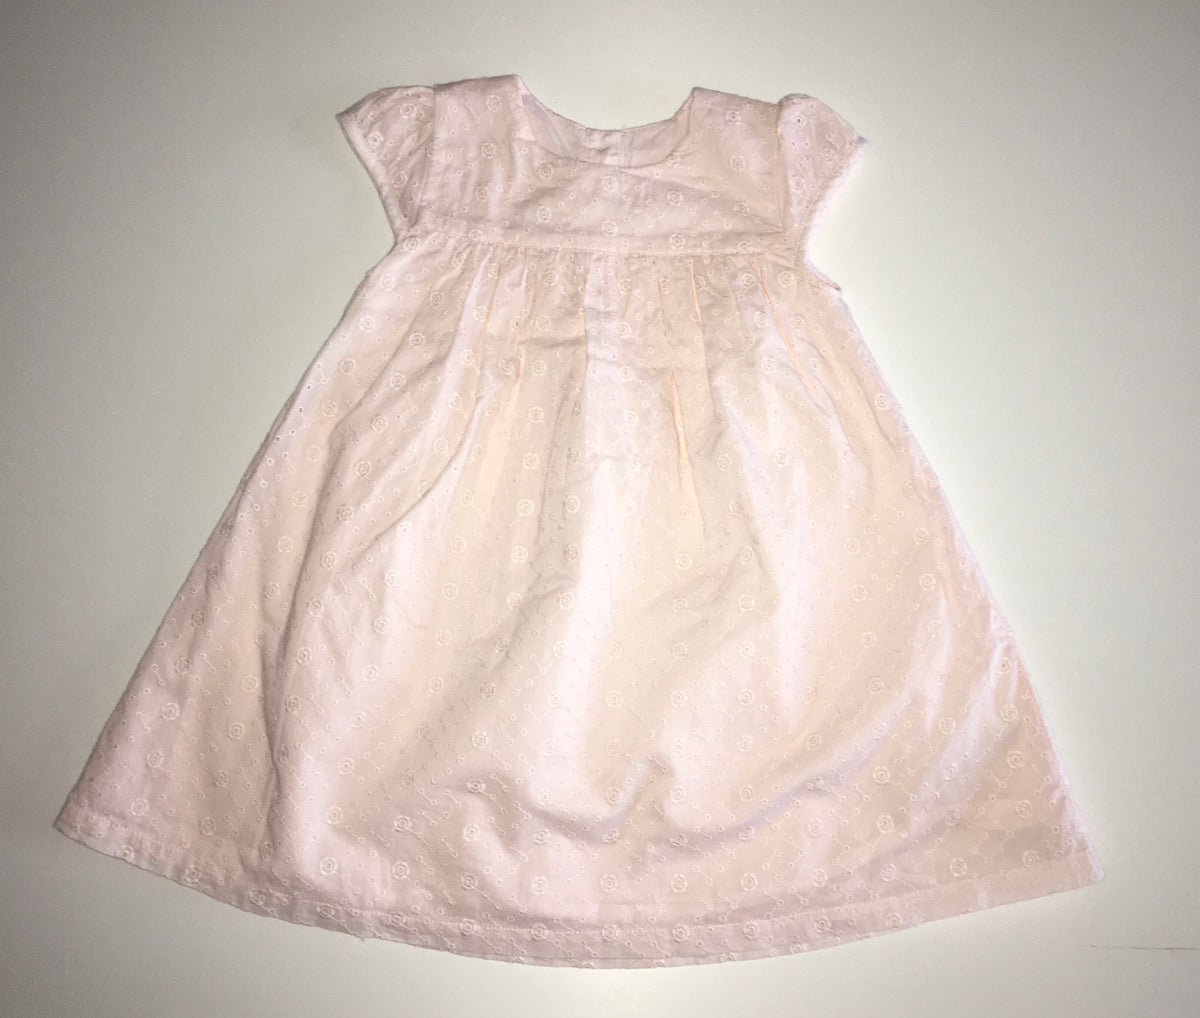 M&S Dress, Girls 12-18 Months